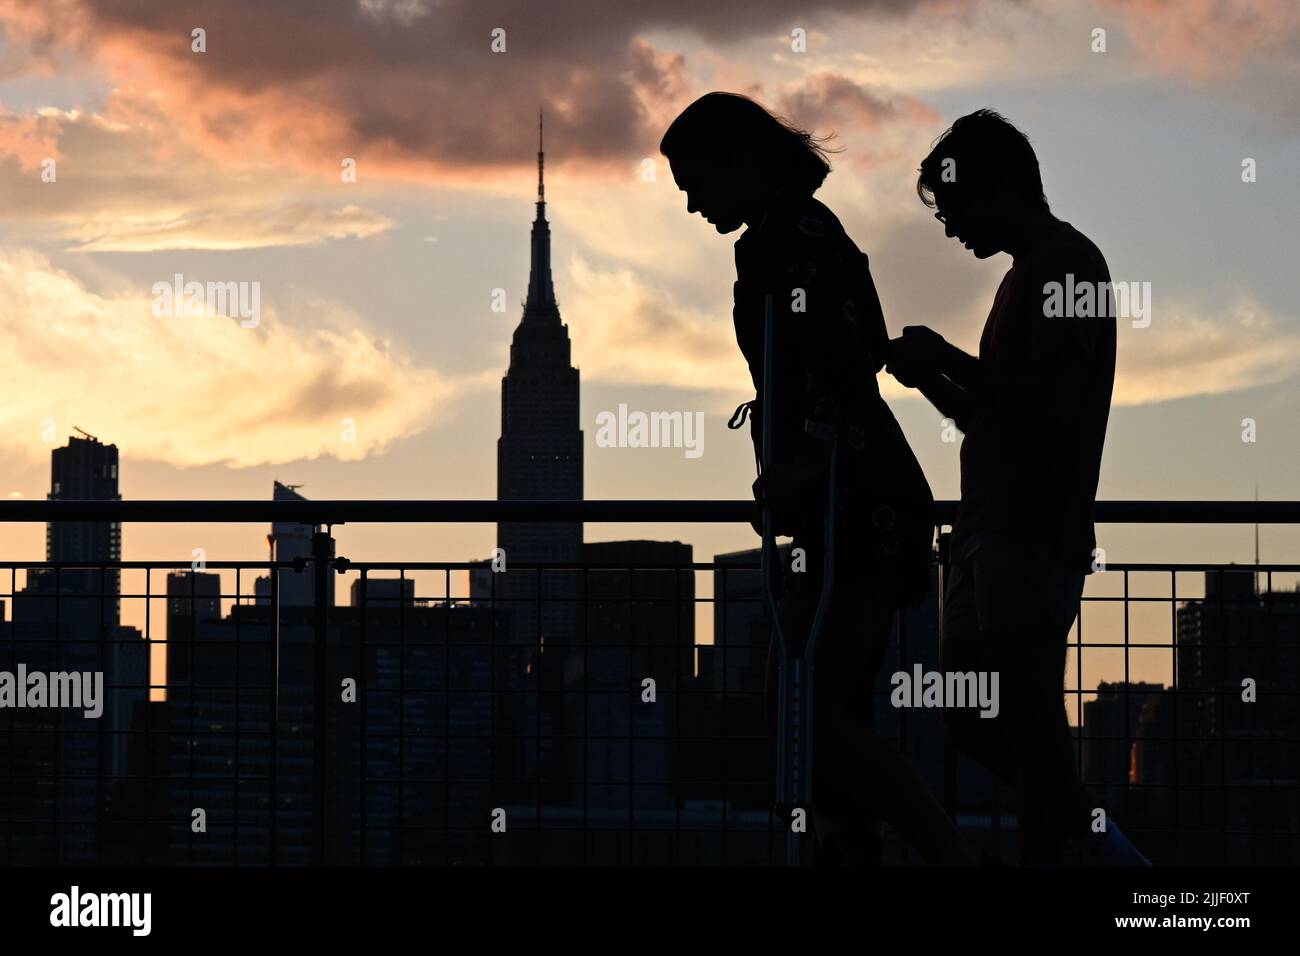 Auf dem Spaziergang entlang der Uferpromenade im Stadtteil Greenpoint in Brooklyn, New York, werden die Menschen vor der Skyline von Manhattan geschildet. Stockfoto